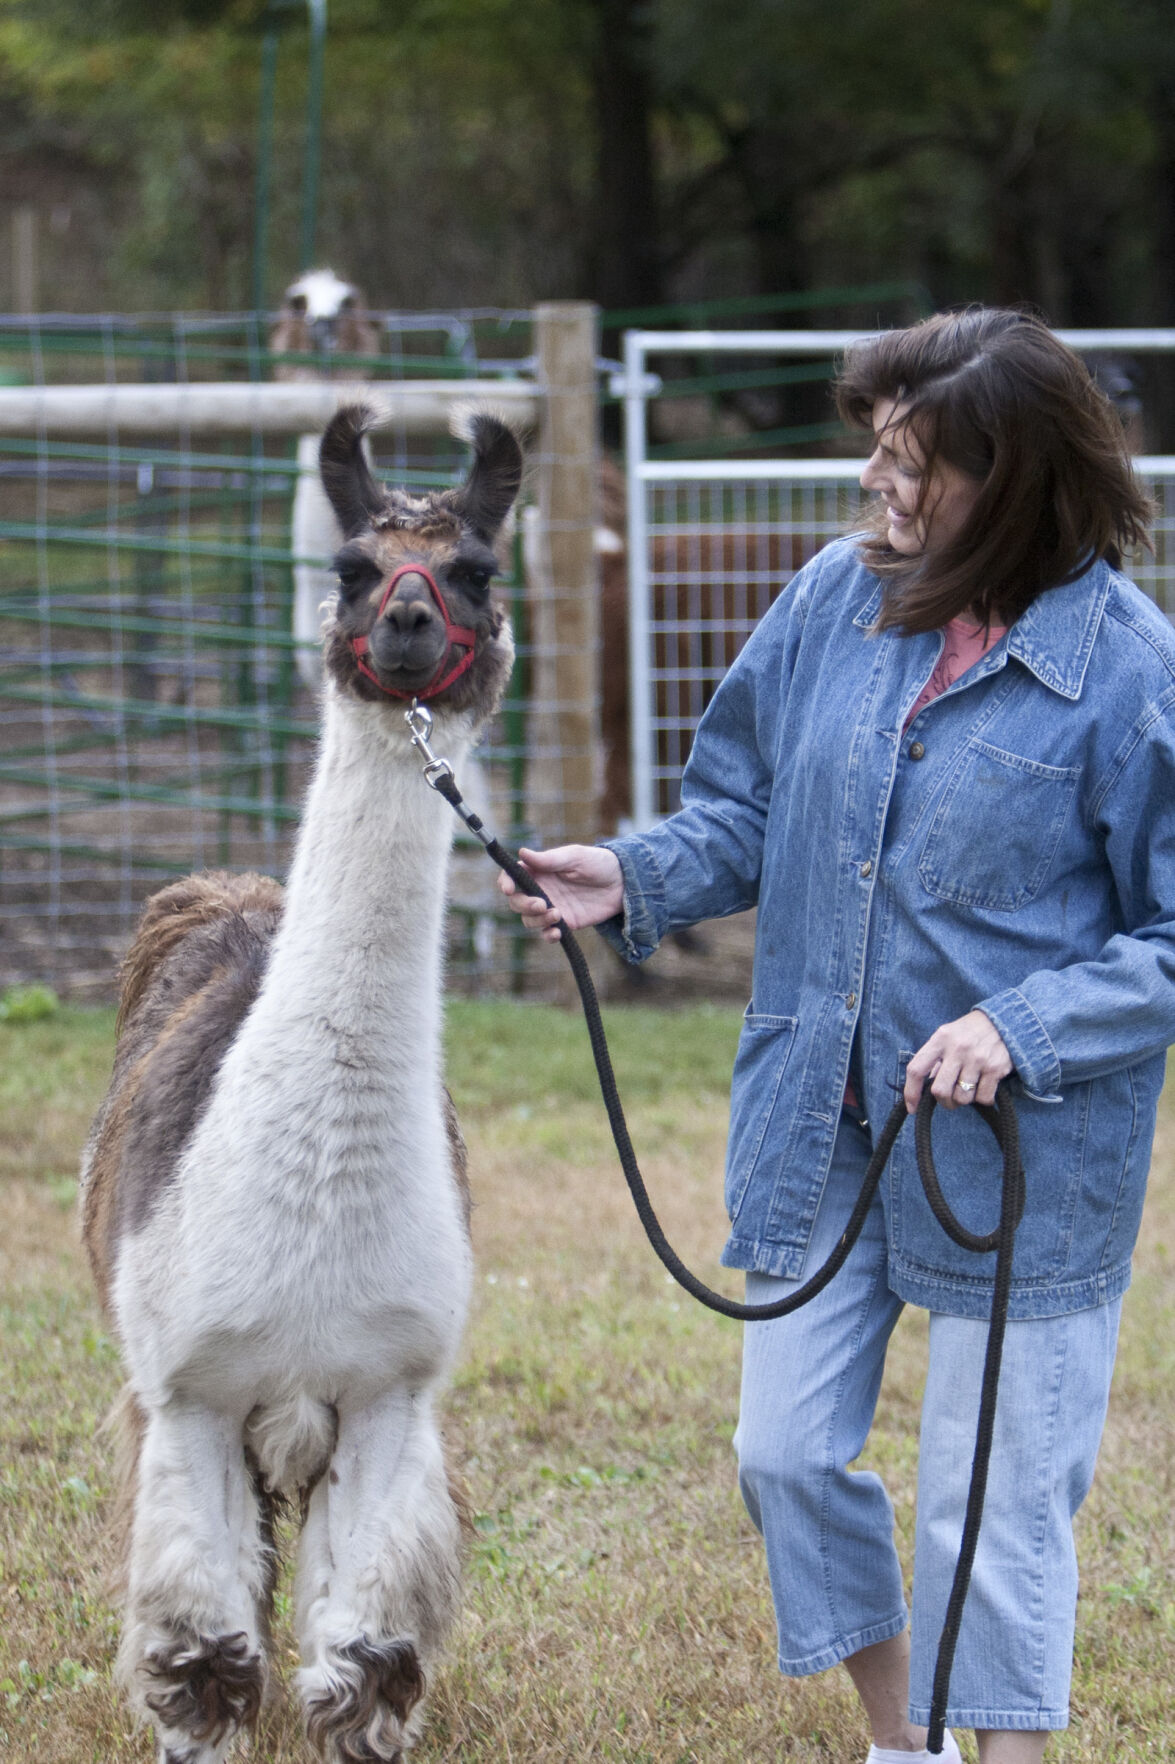 Hastings' little llamas: Local farm raises miniature llamas